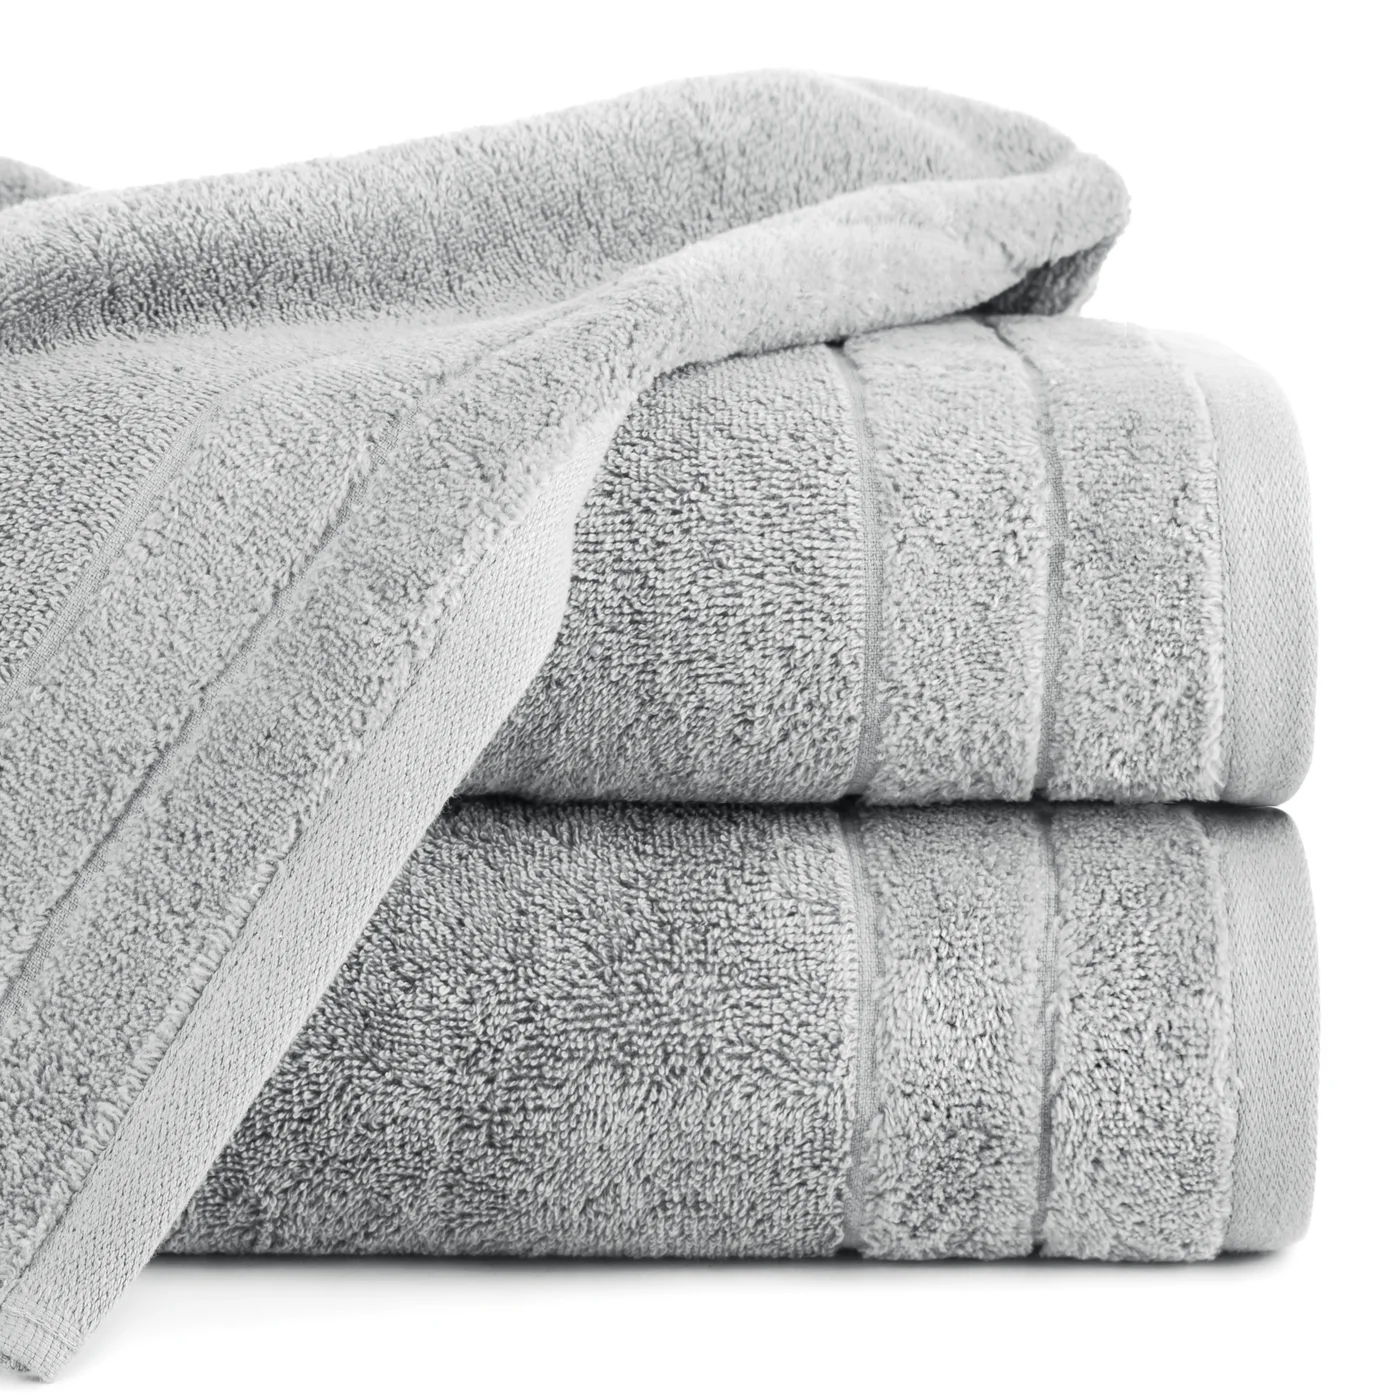 Ręcznik z bawełny klasyczny stalowy